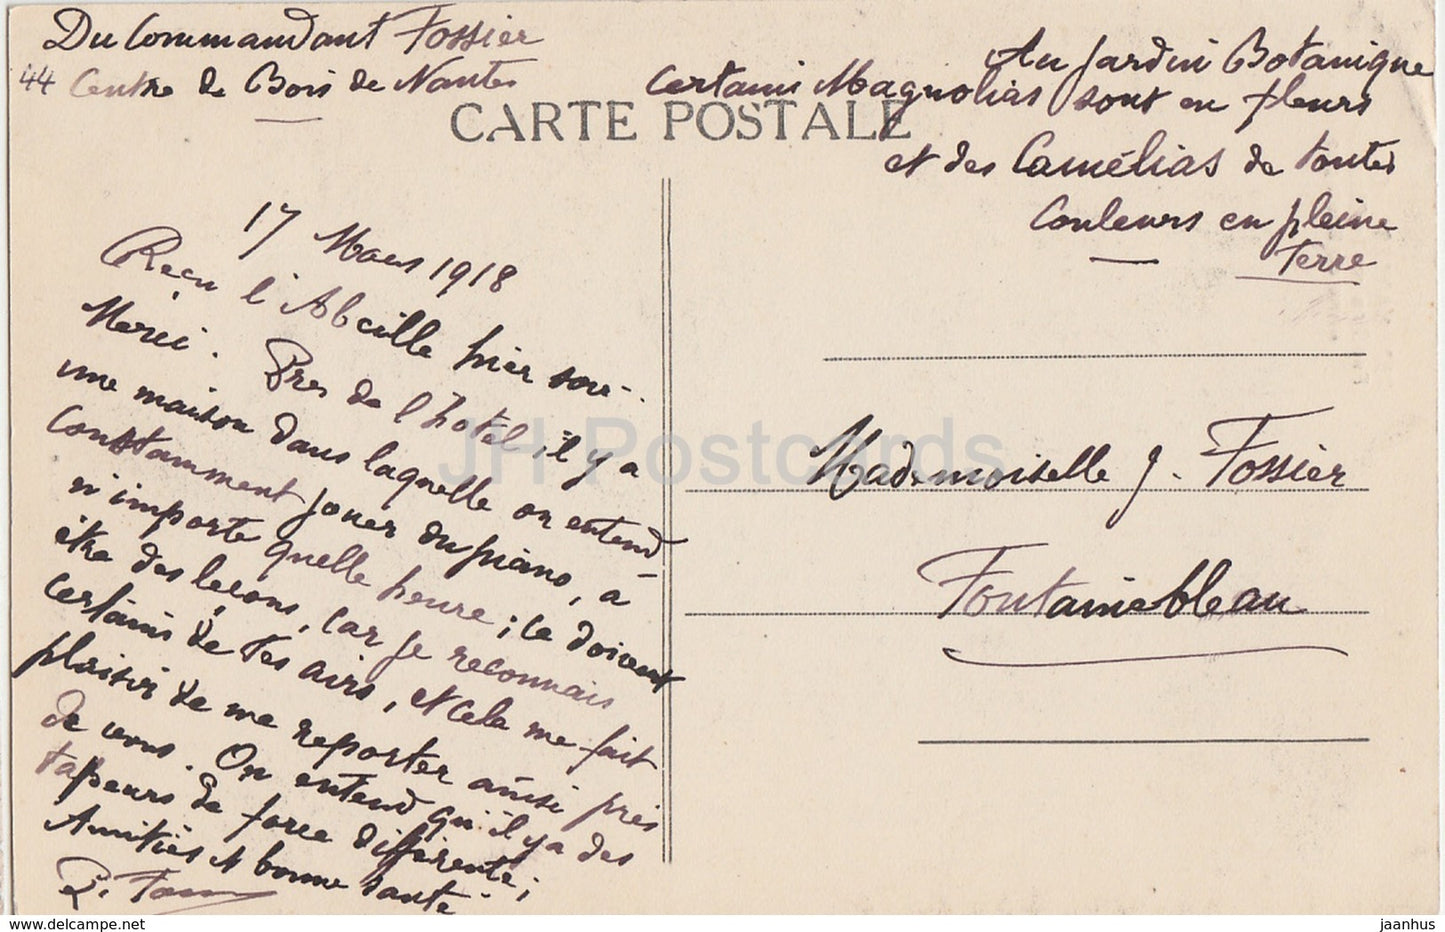 Nantes - Cour du Chateau Fenetre de la Chambre - Schloss - 797 - alte Postkarte - 1918 - Frankreich - gebraucht